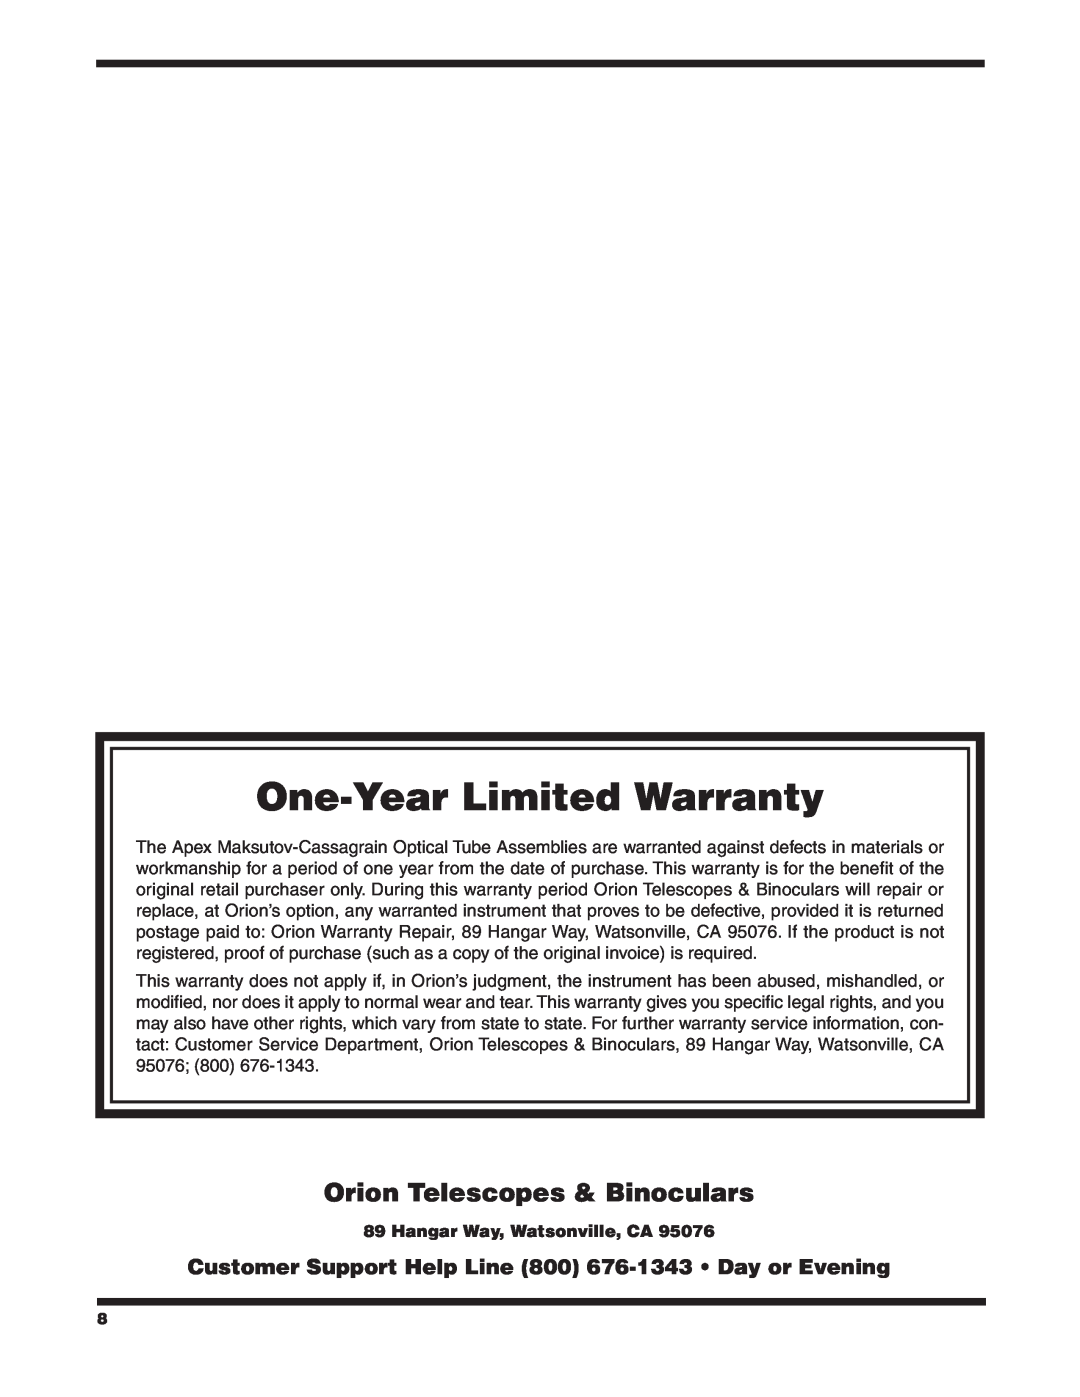 Orion #9820, #9823, #9825 Orion Telescopes & Binoculars, One-YearLimited Warranty, Hangar Way, Watsonville, CA 